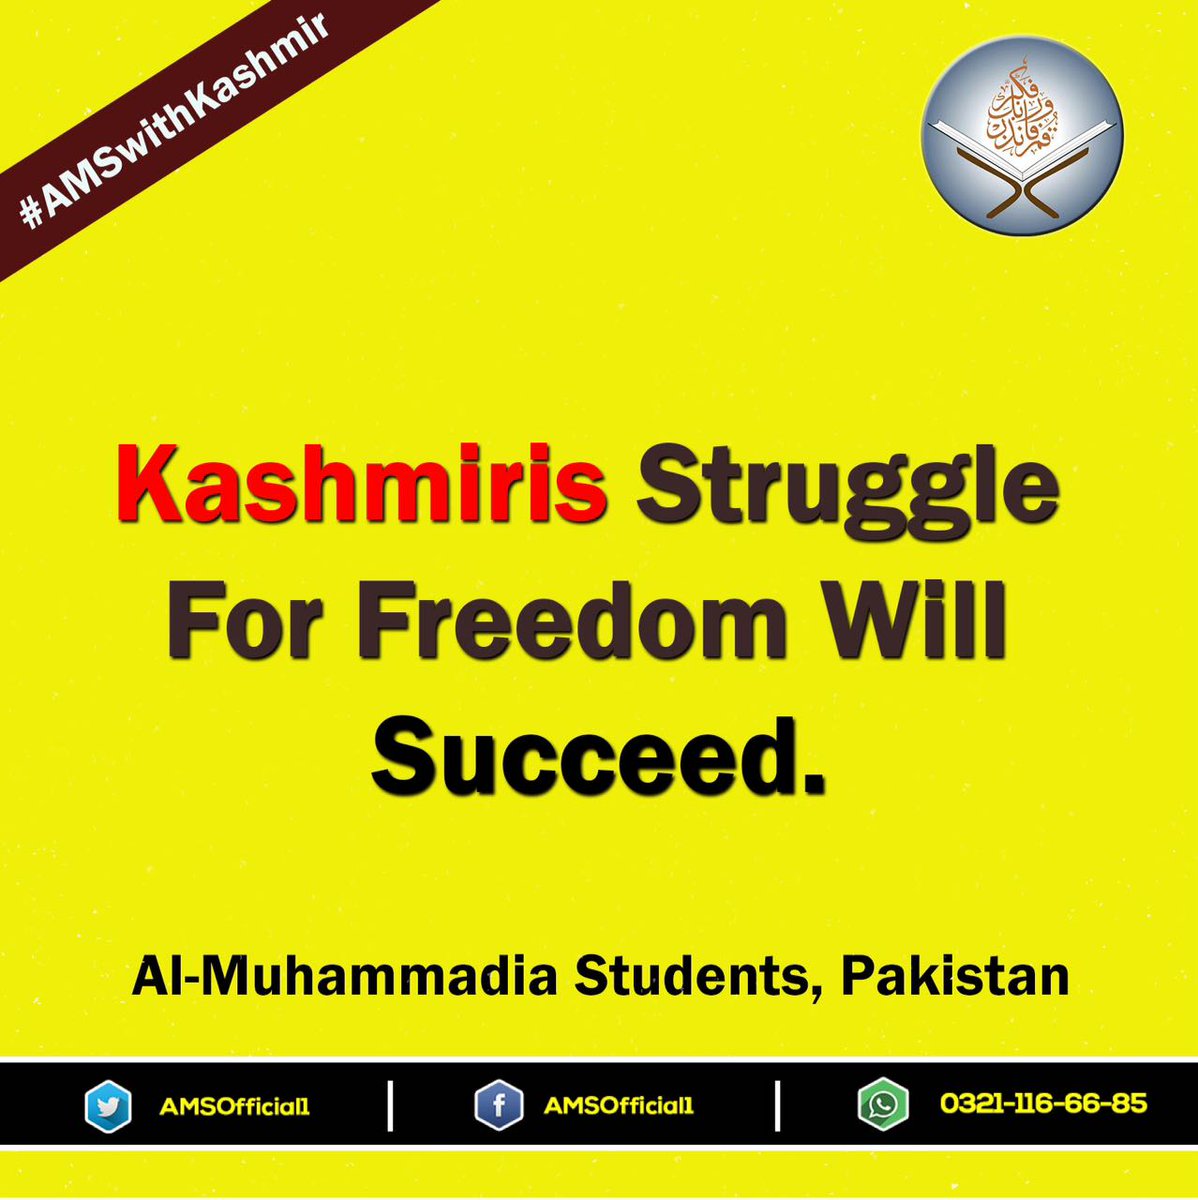 #کشمیرکی_تقدیرآزادی
 Kashmiris beleive in one Allah he will let them down
#Struggletosuccess 
#Disappointmentissin
#kashmirbnygapakistan